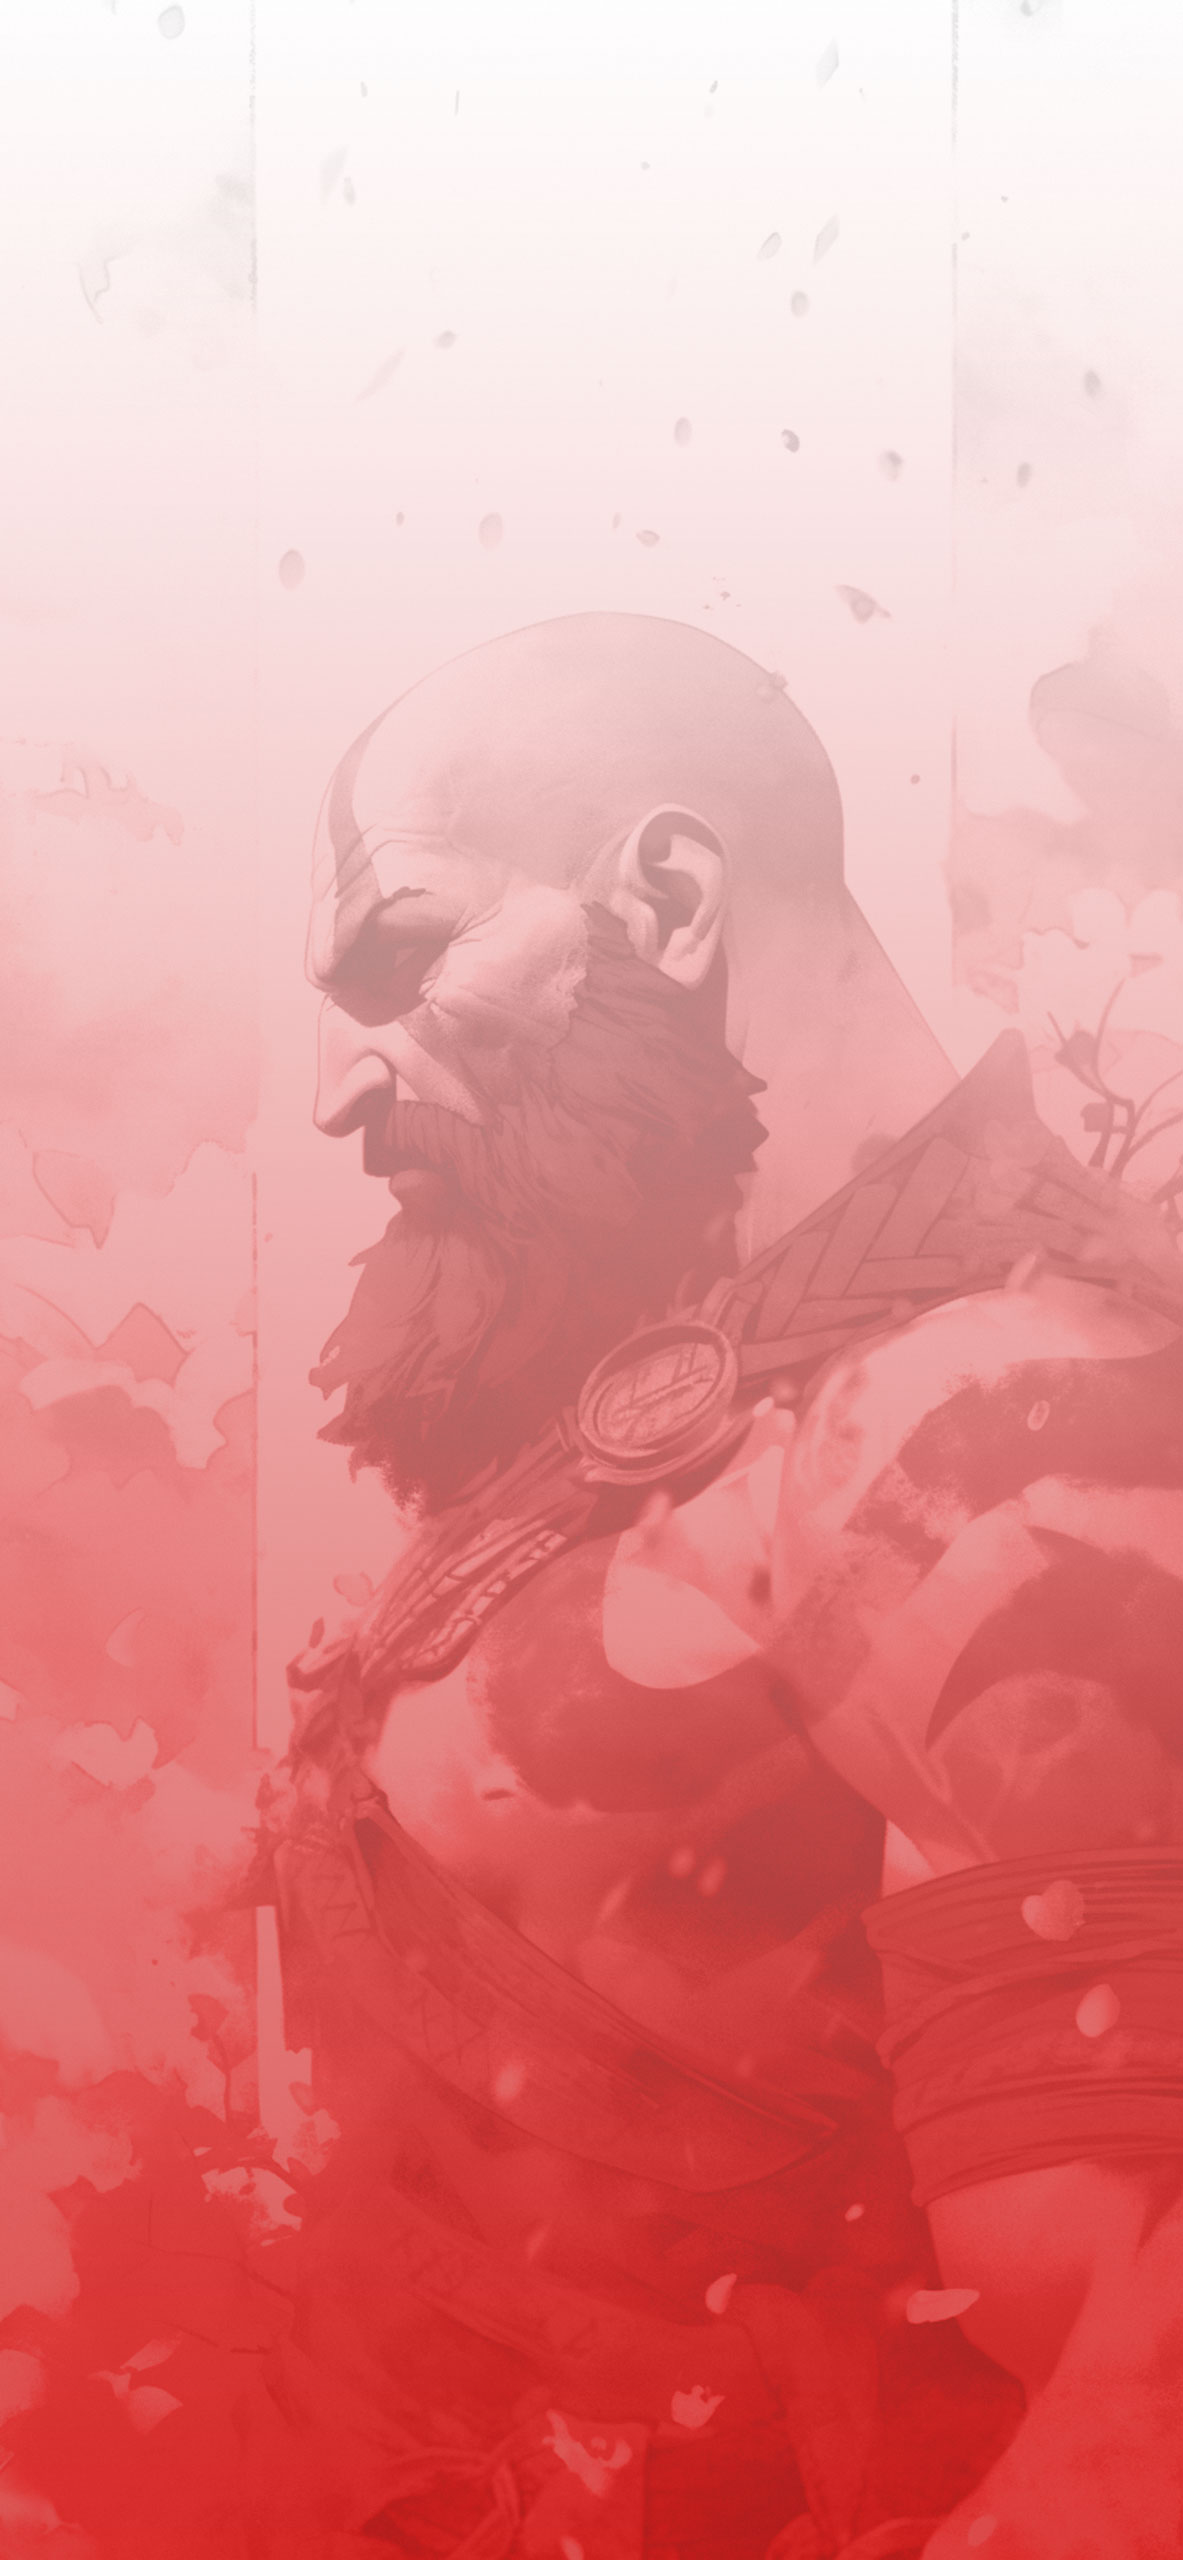 Kratos white & red art wallpaper God of war aesthetic wallpape